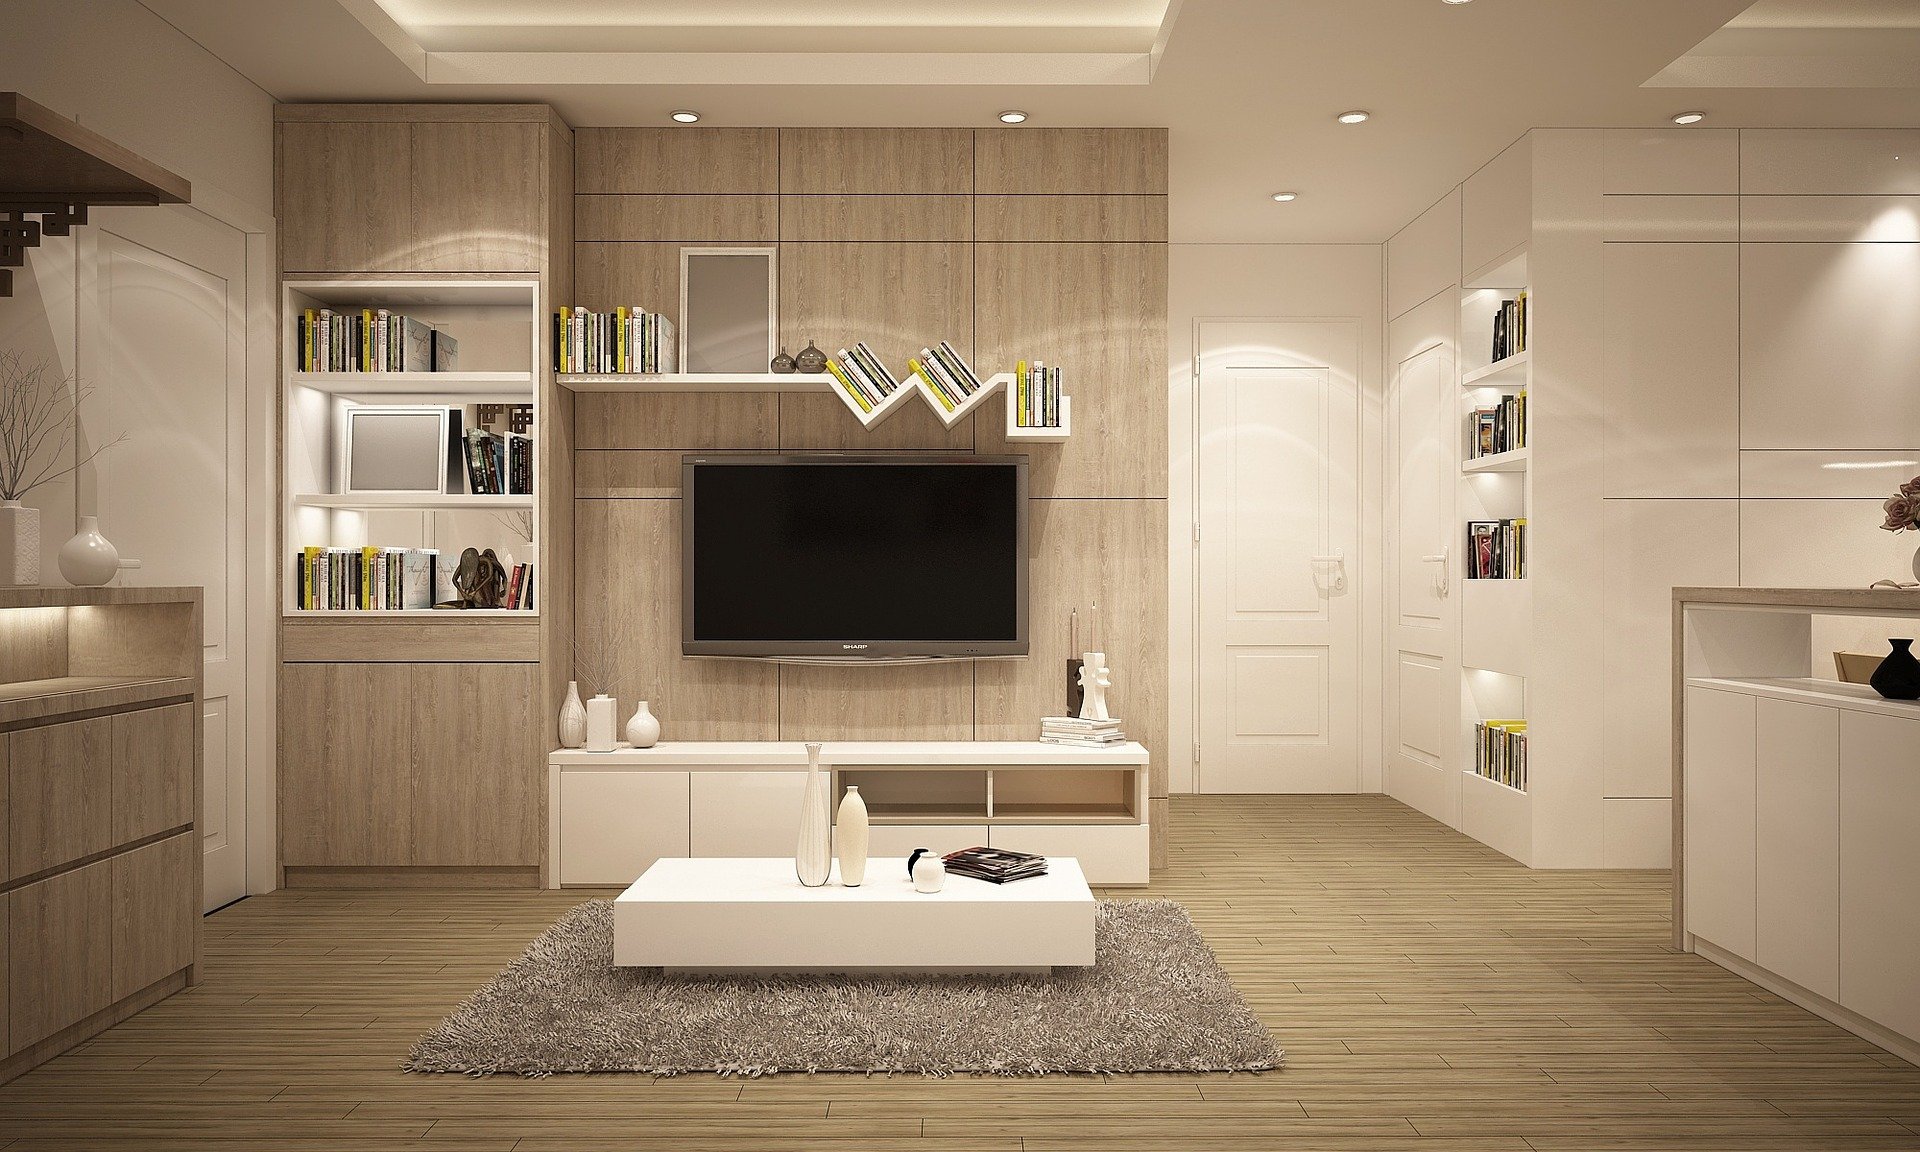 Os painéis derivados de madeira são aplicados em cozinhas, mobiliário, pavimentos e decoração de interiores.